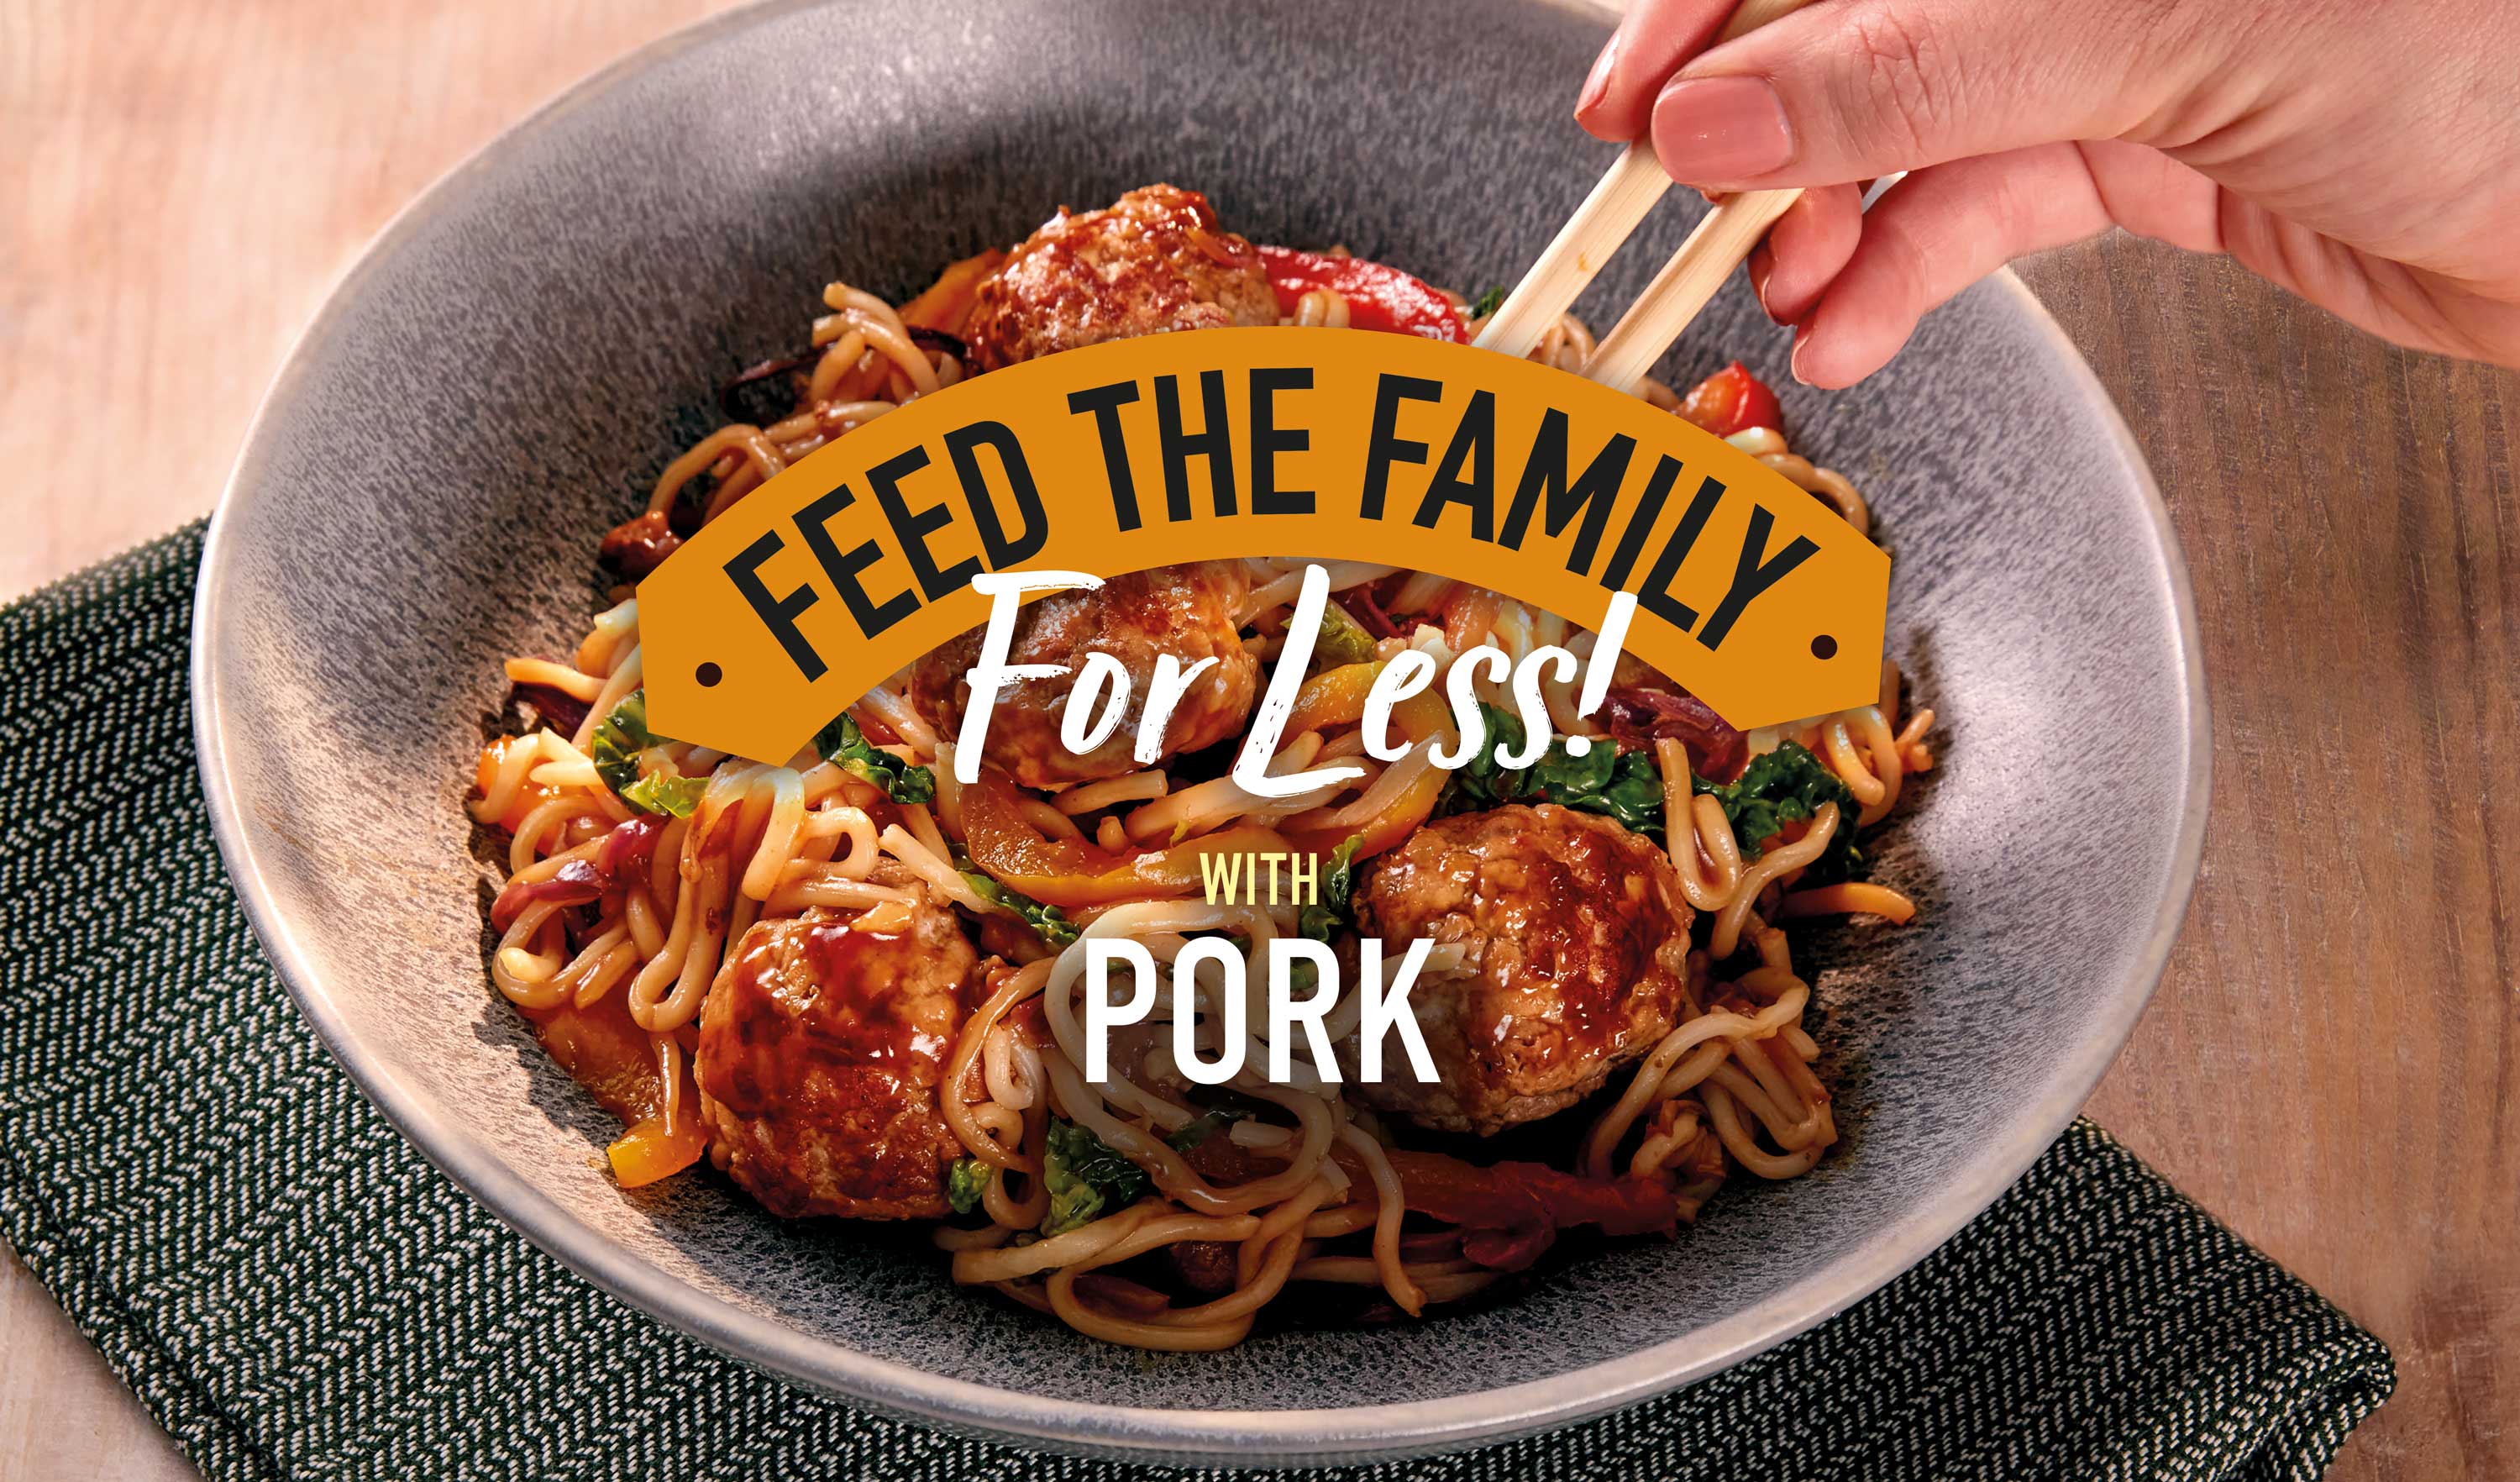 Pork autumn feed family for less hoisin banner